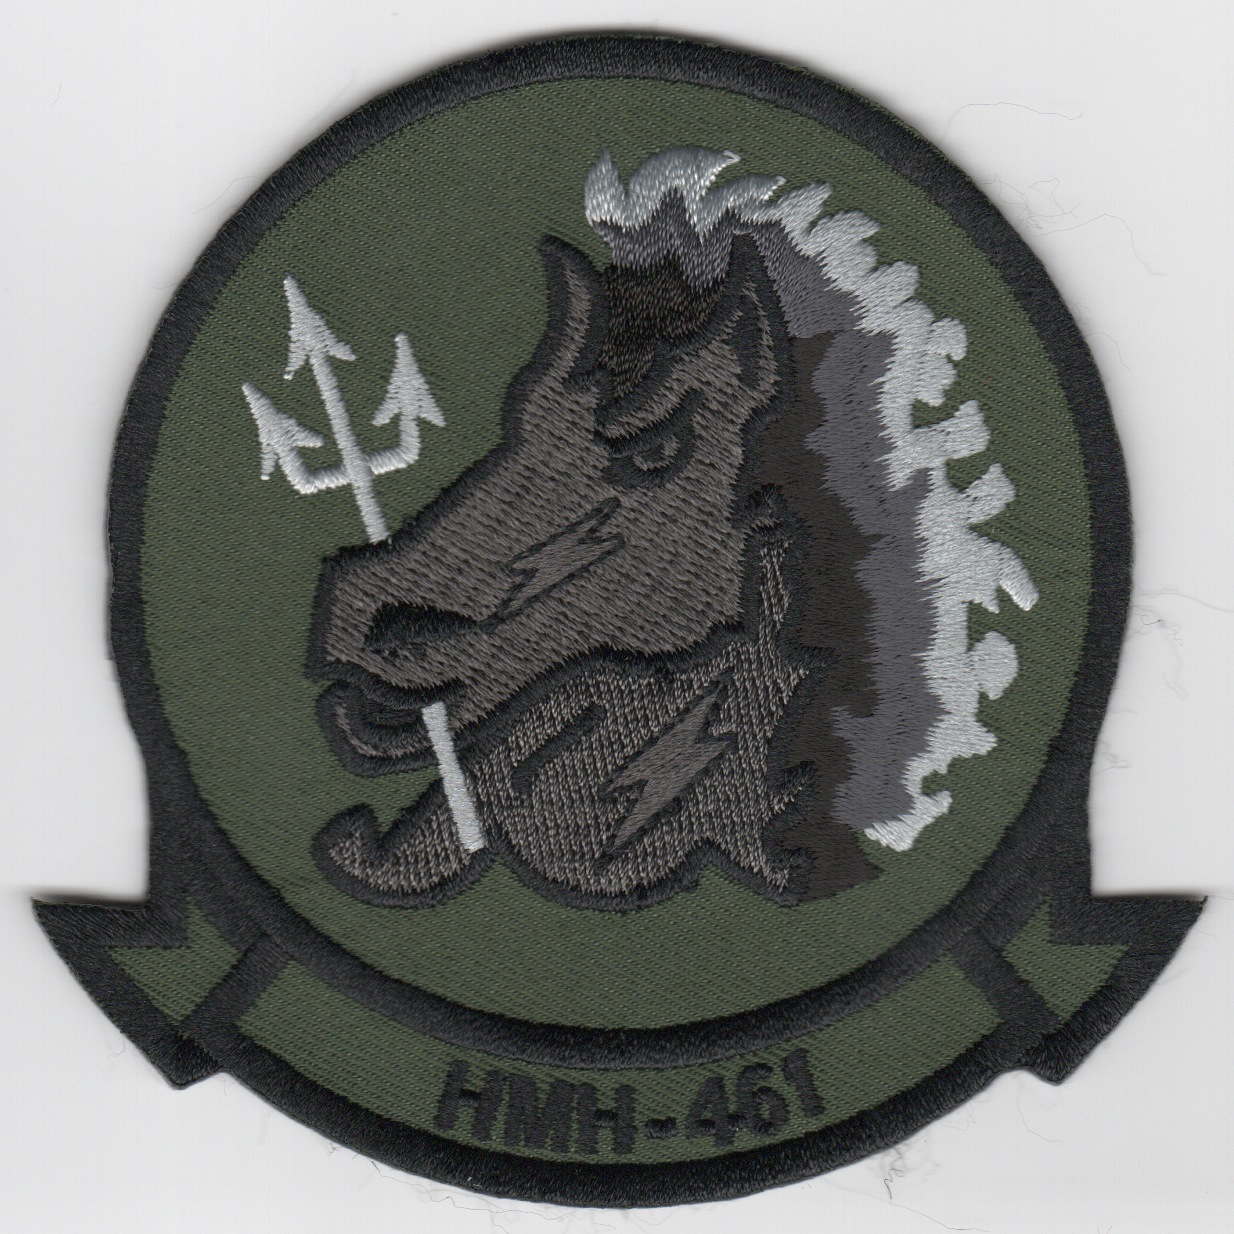 HMH-461 Squadron Patch (Subd)